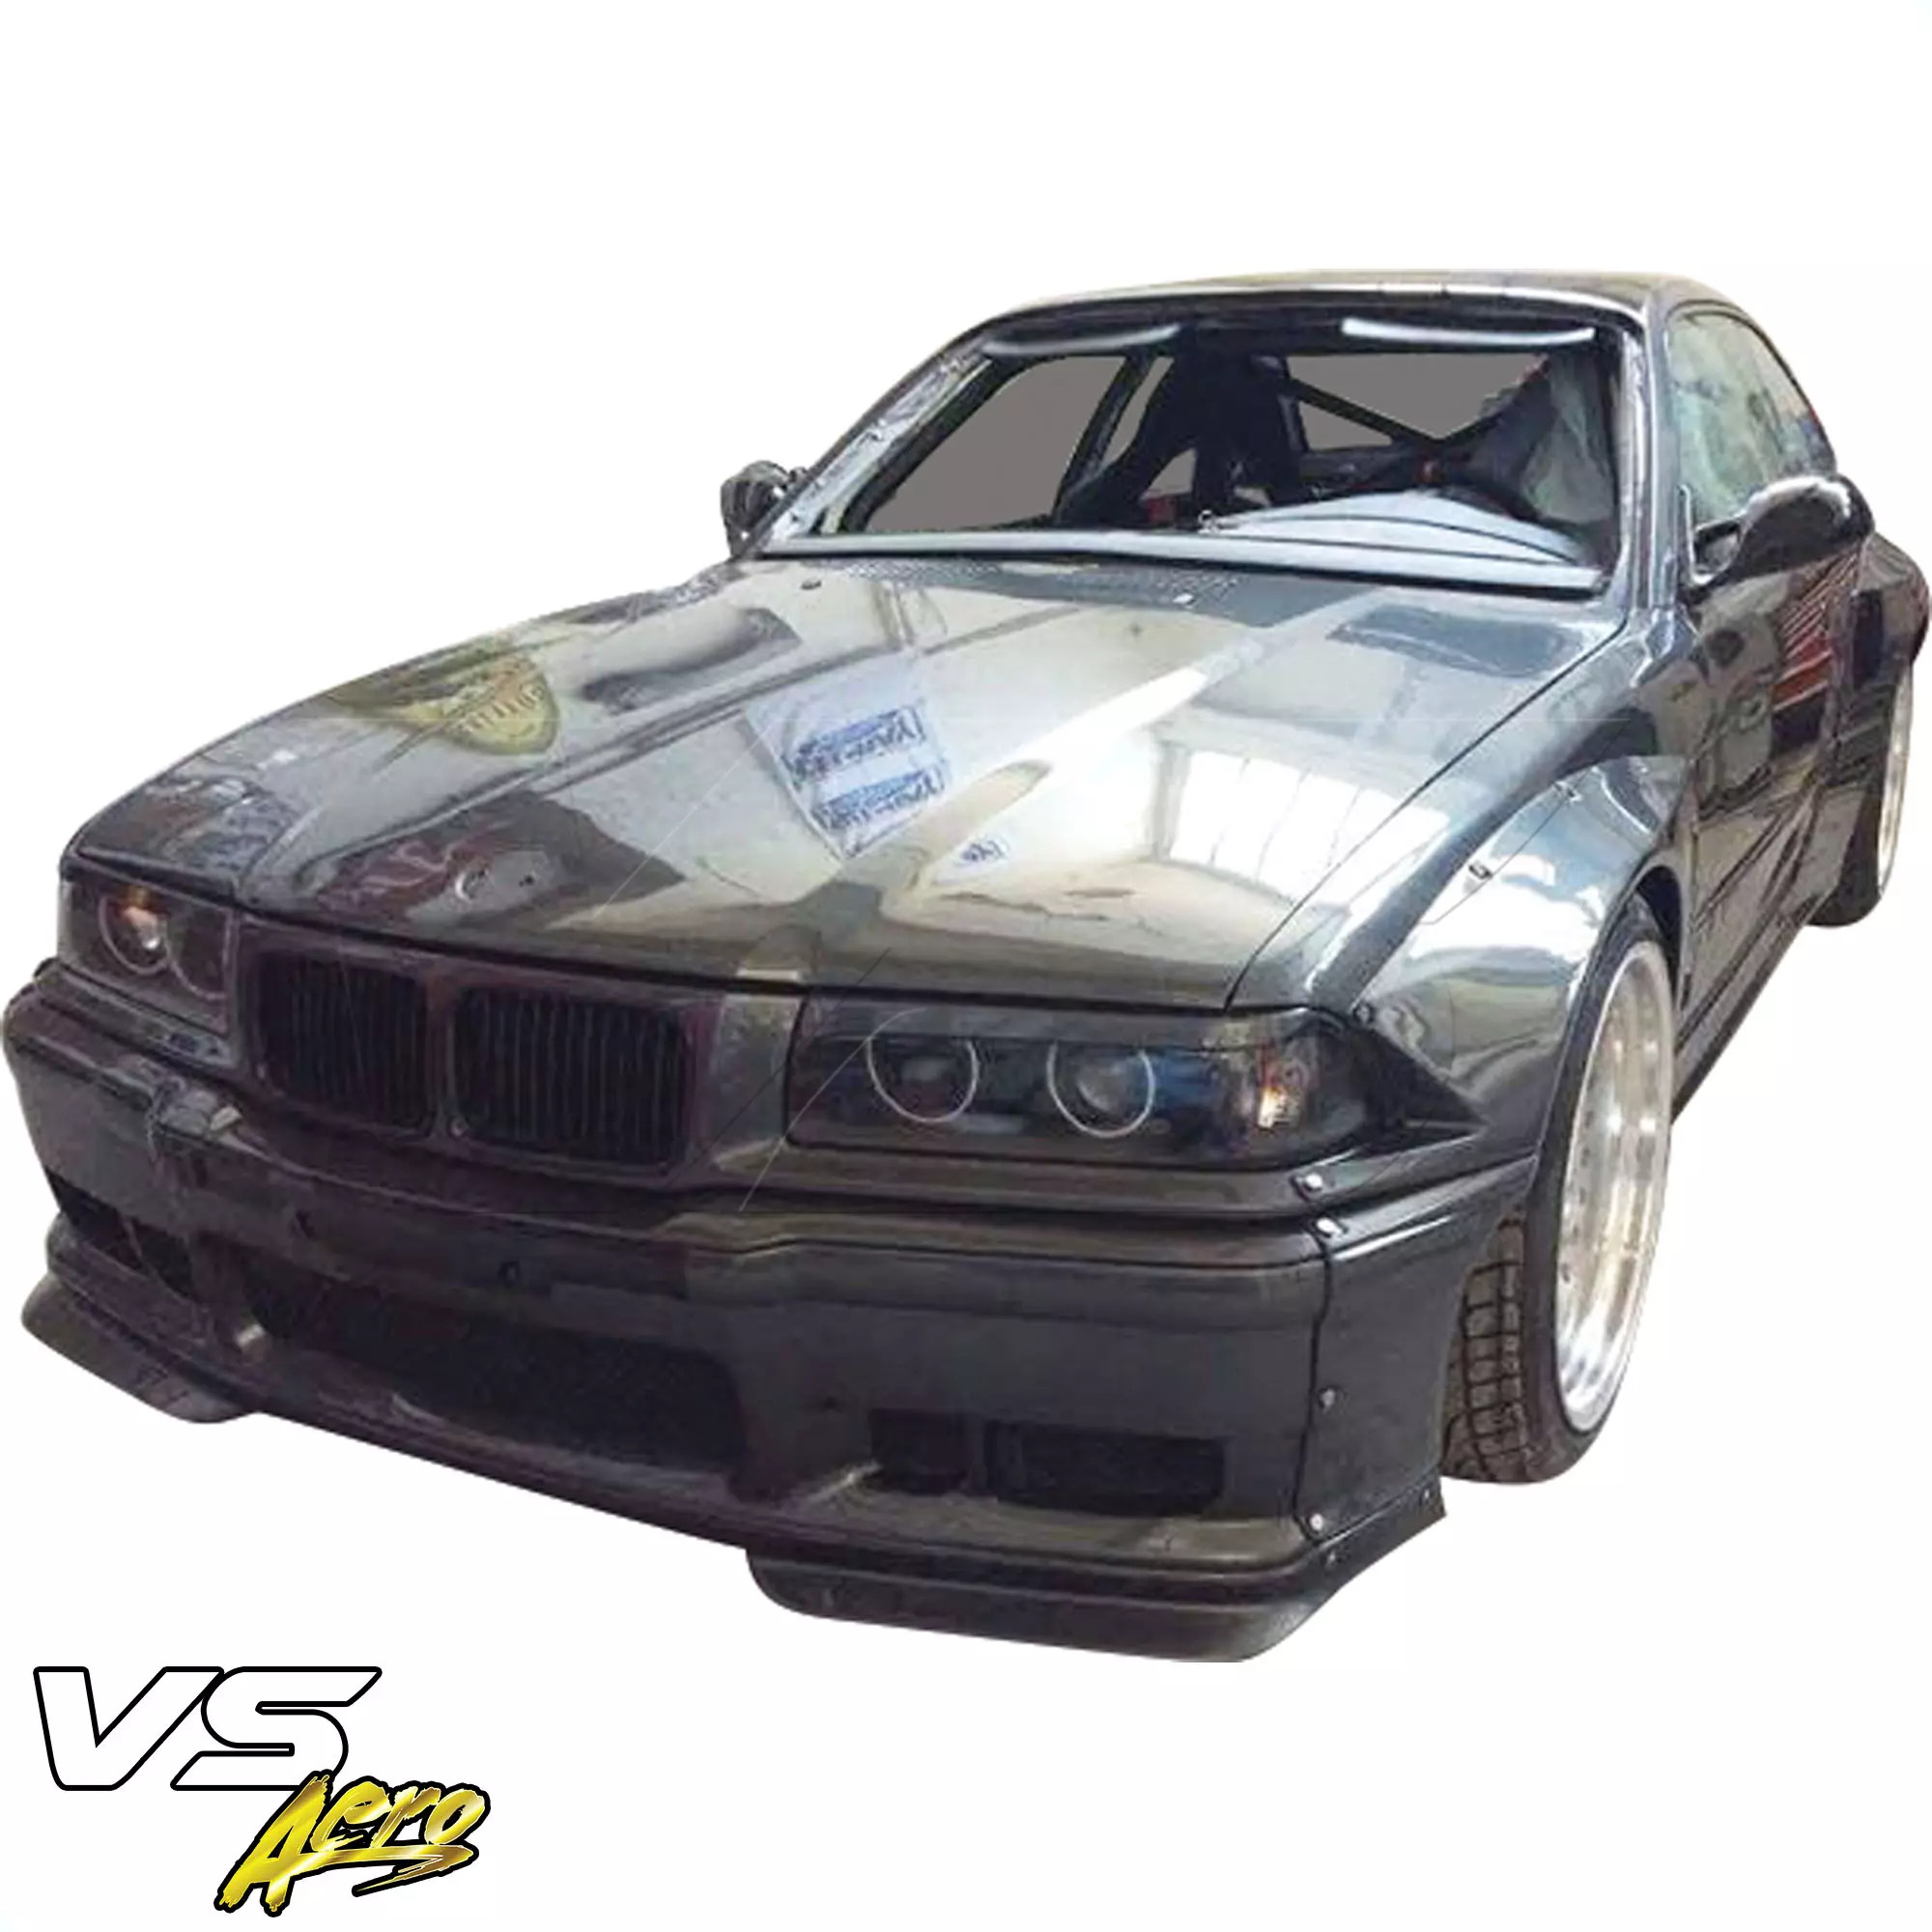 VSaero FRP TKYO Wide Body Front Lip > BMW 3-Series 325i 328i E36 1992-1998 > 2dr Coupe - Image 6